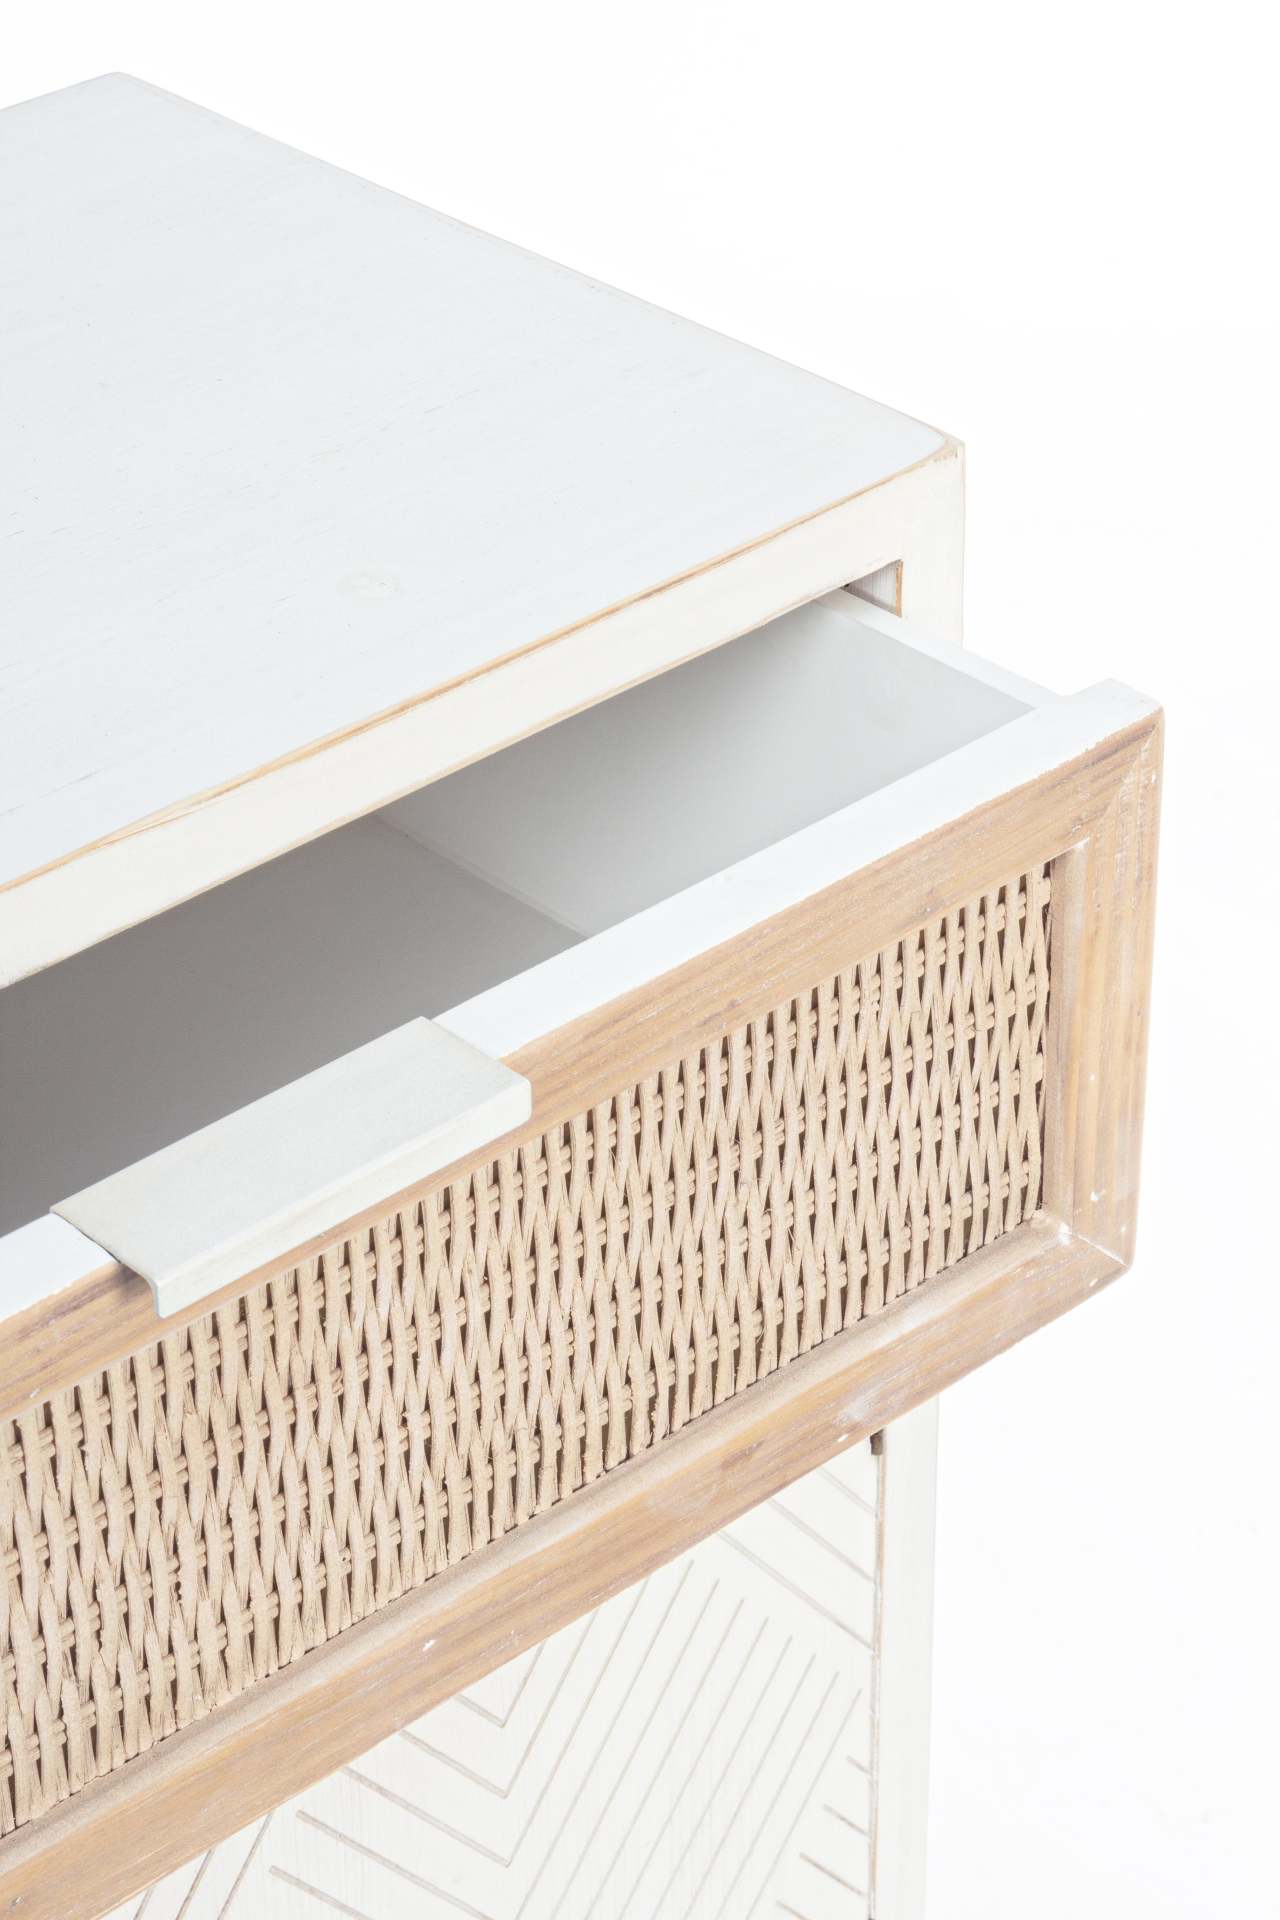 Der Nachttisch Clothilde überzeugt mit seinem klassischen Design. Gefertigt wurde er aus Tannenholz, welches einen weißen Farbton besitzt. Die Schublade ist aus Rattan und hat eine natürlichen Farbe. Der Nachttisch verfügt über eine Schublade und eine Tür